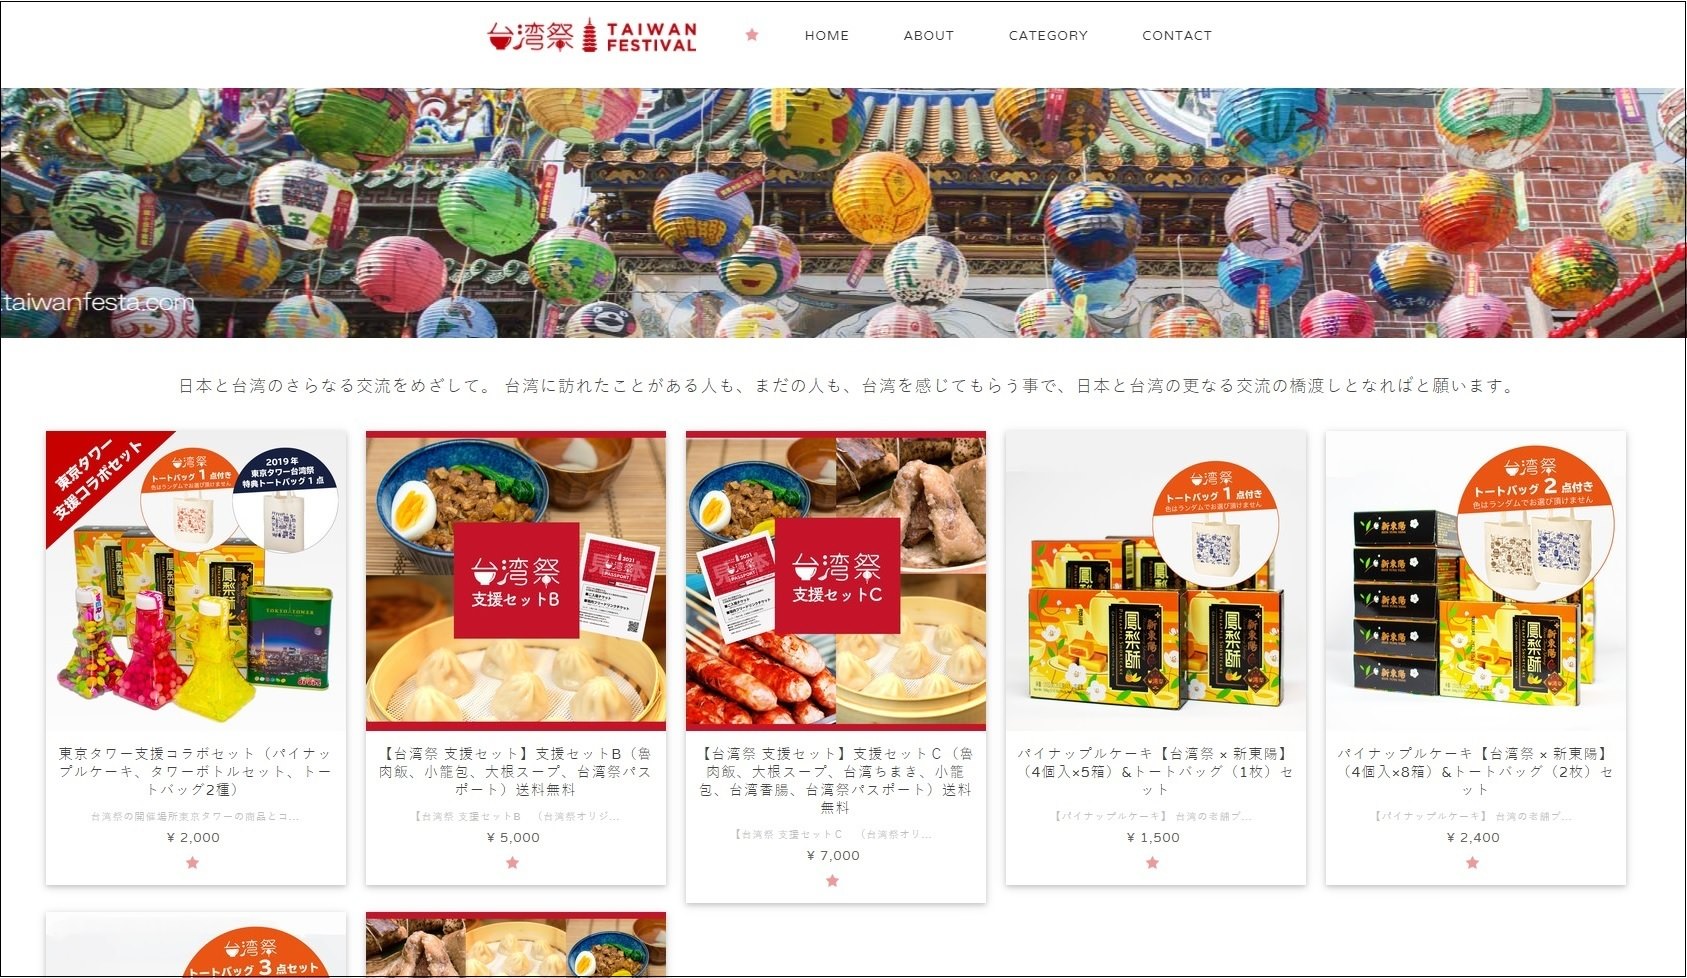 名古屋発、オンライン料理教室生配信
「HAPPY Food Online」を開始